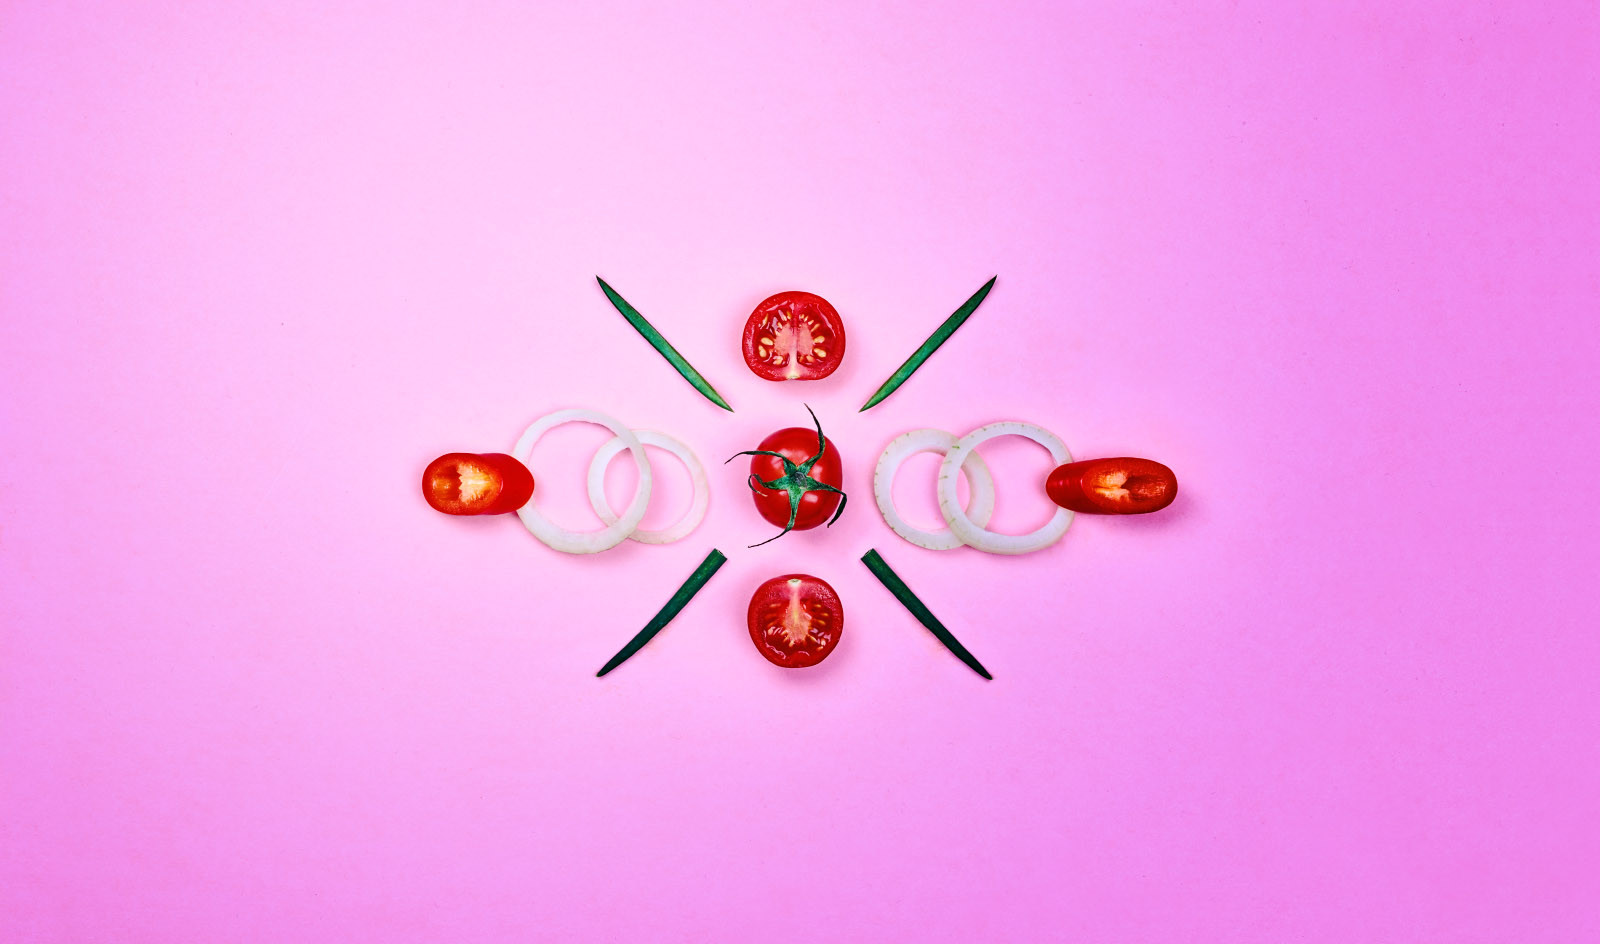 Tomaten und Zwiebeln arrangiert auf rosa Untergrund.